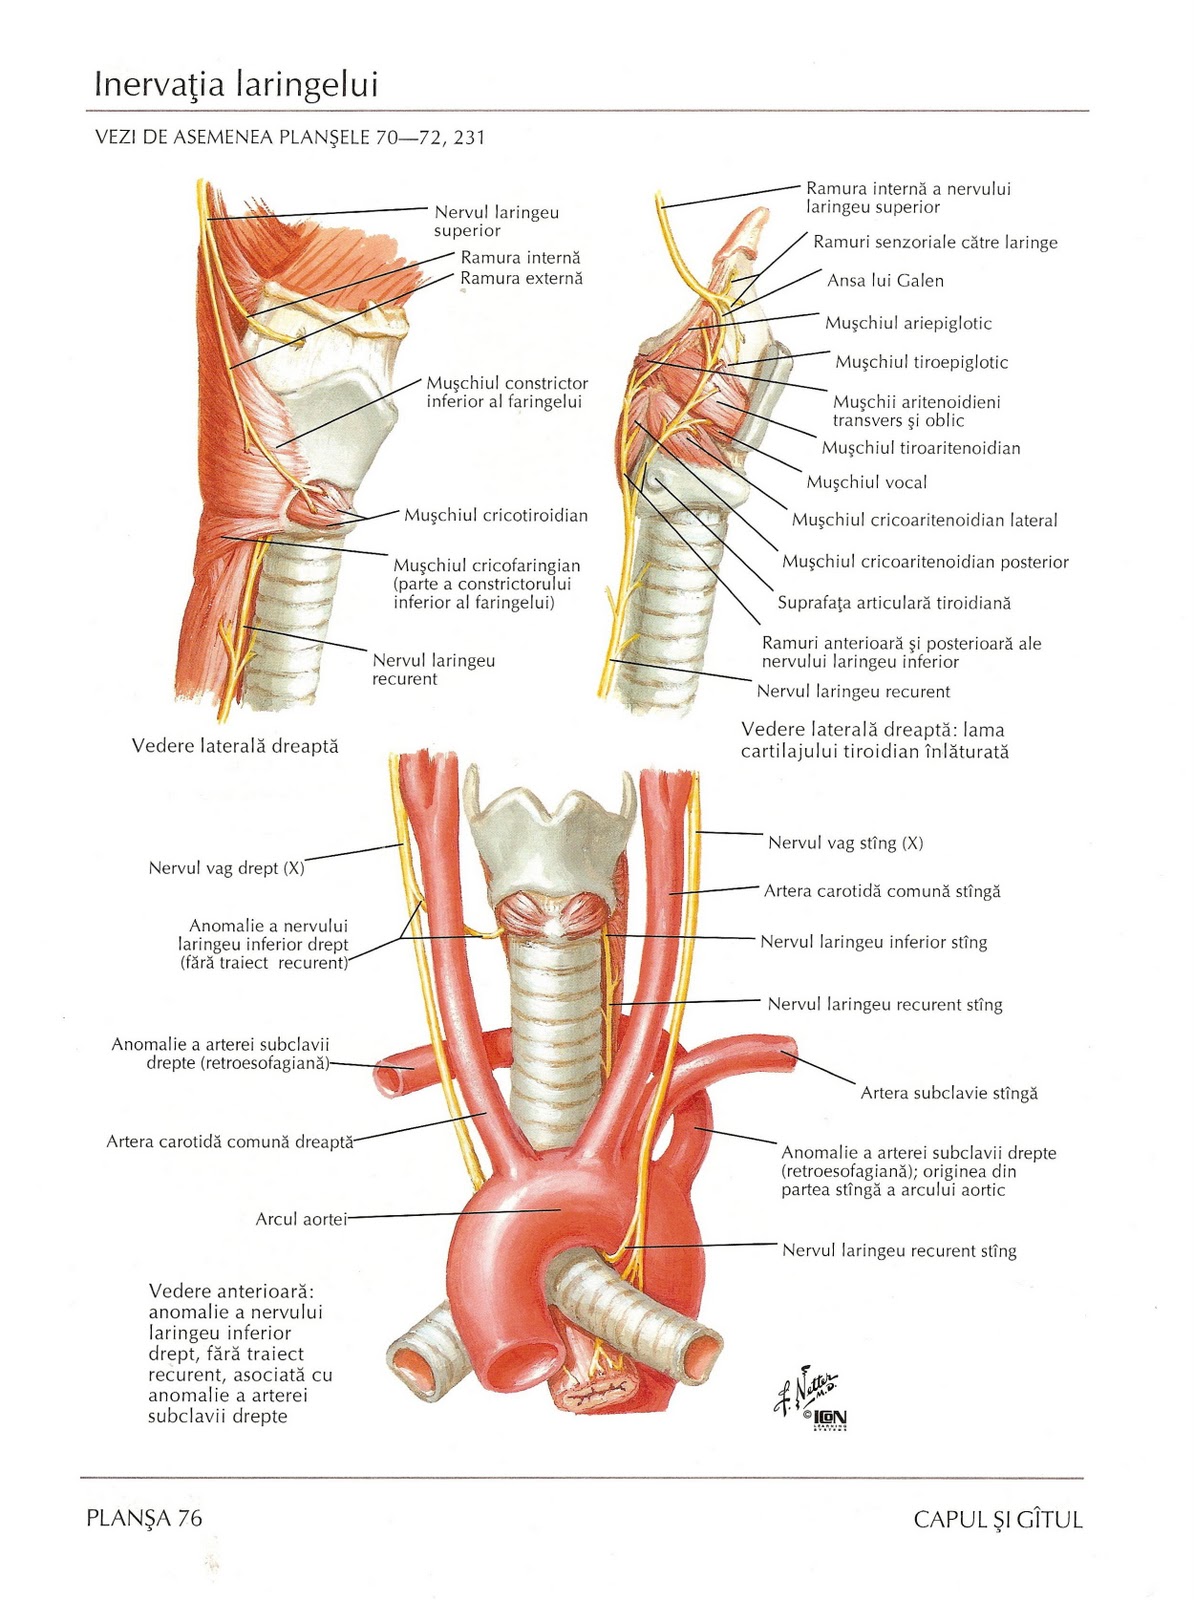 Нерв глотки. Возвратный нерв щитовидной железы анатомия. Хрящи гортани топографическая анатомия. Анатомия гортани кровоснабжение и иннервация. Иннервация щитовидной железы анатомия.